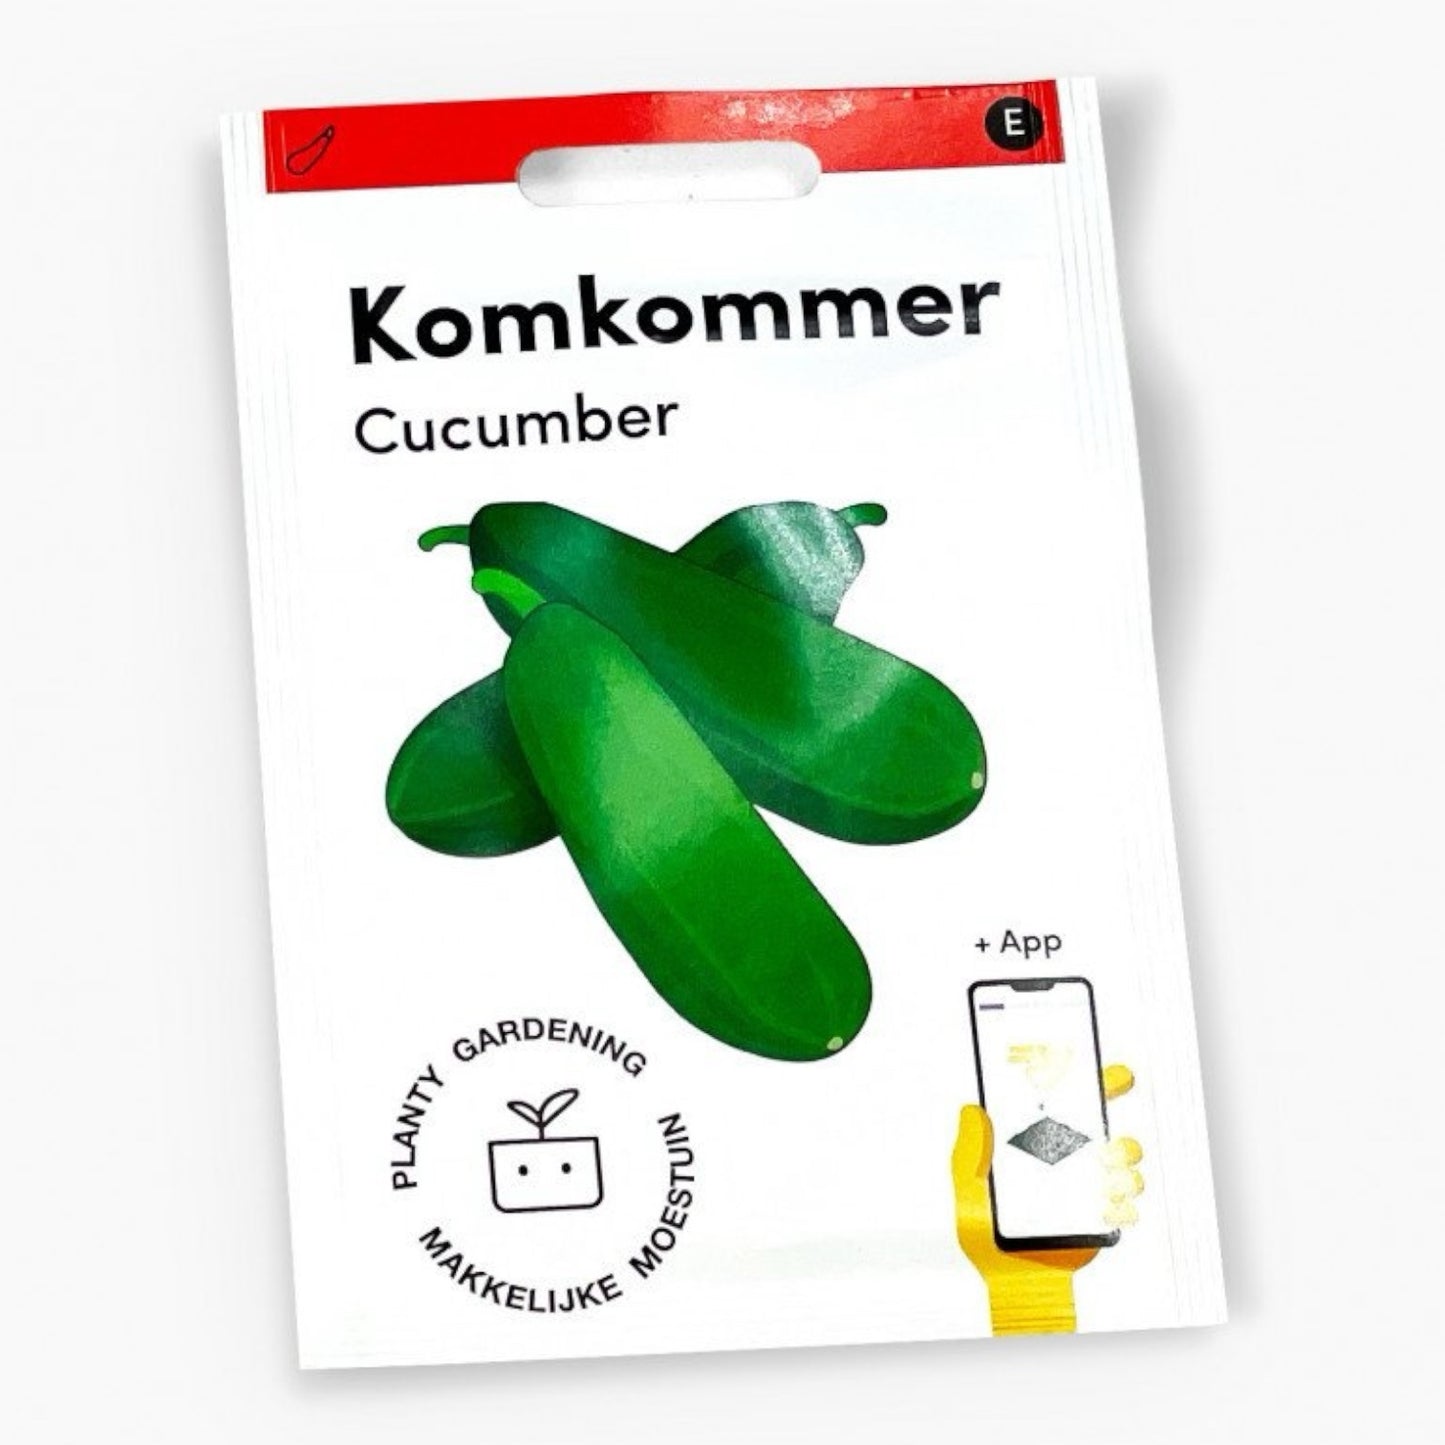 Komkommer